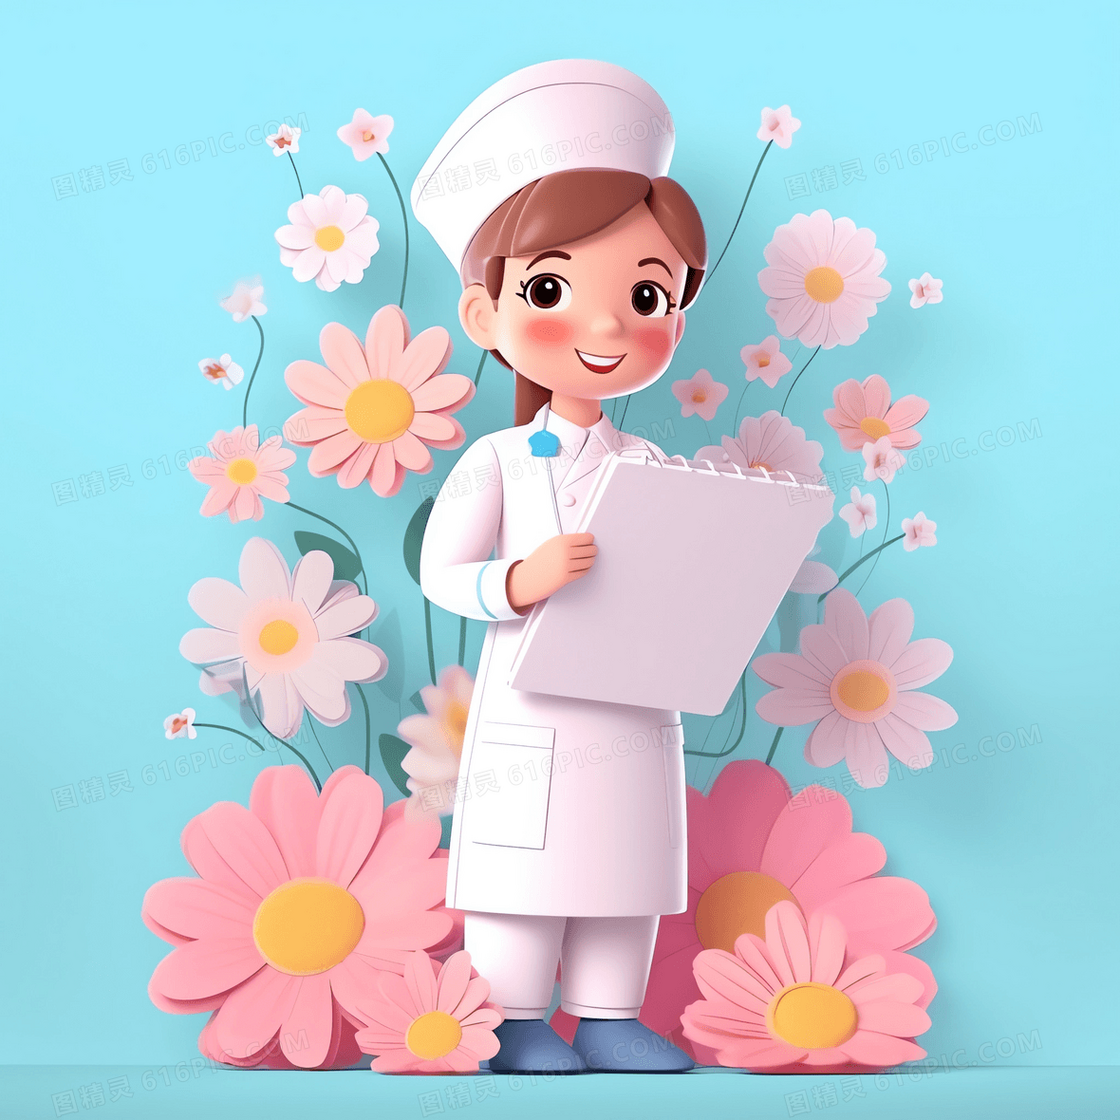 医生护士小报素材-医生护士小报模板-医生护士小报图片免费下载-设图网